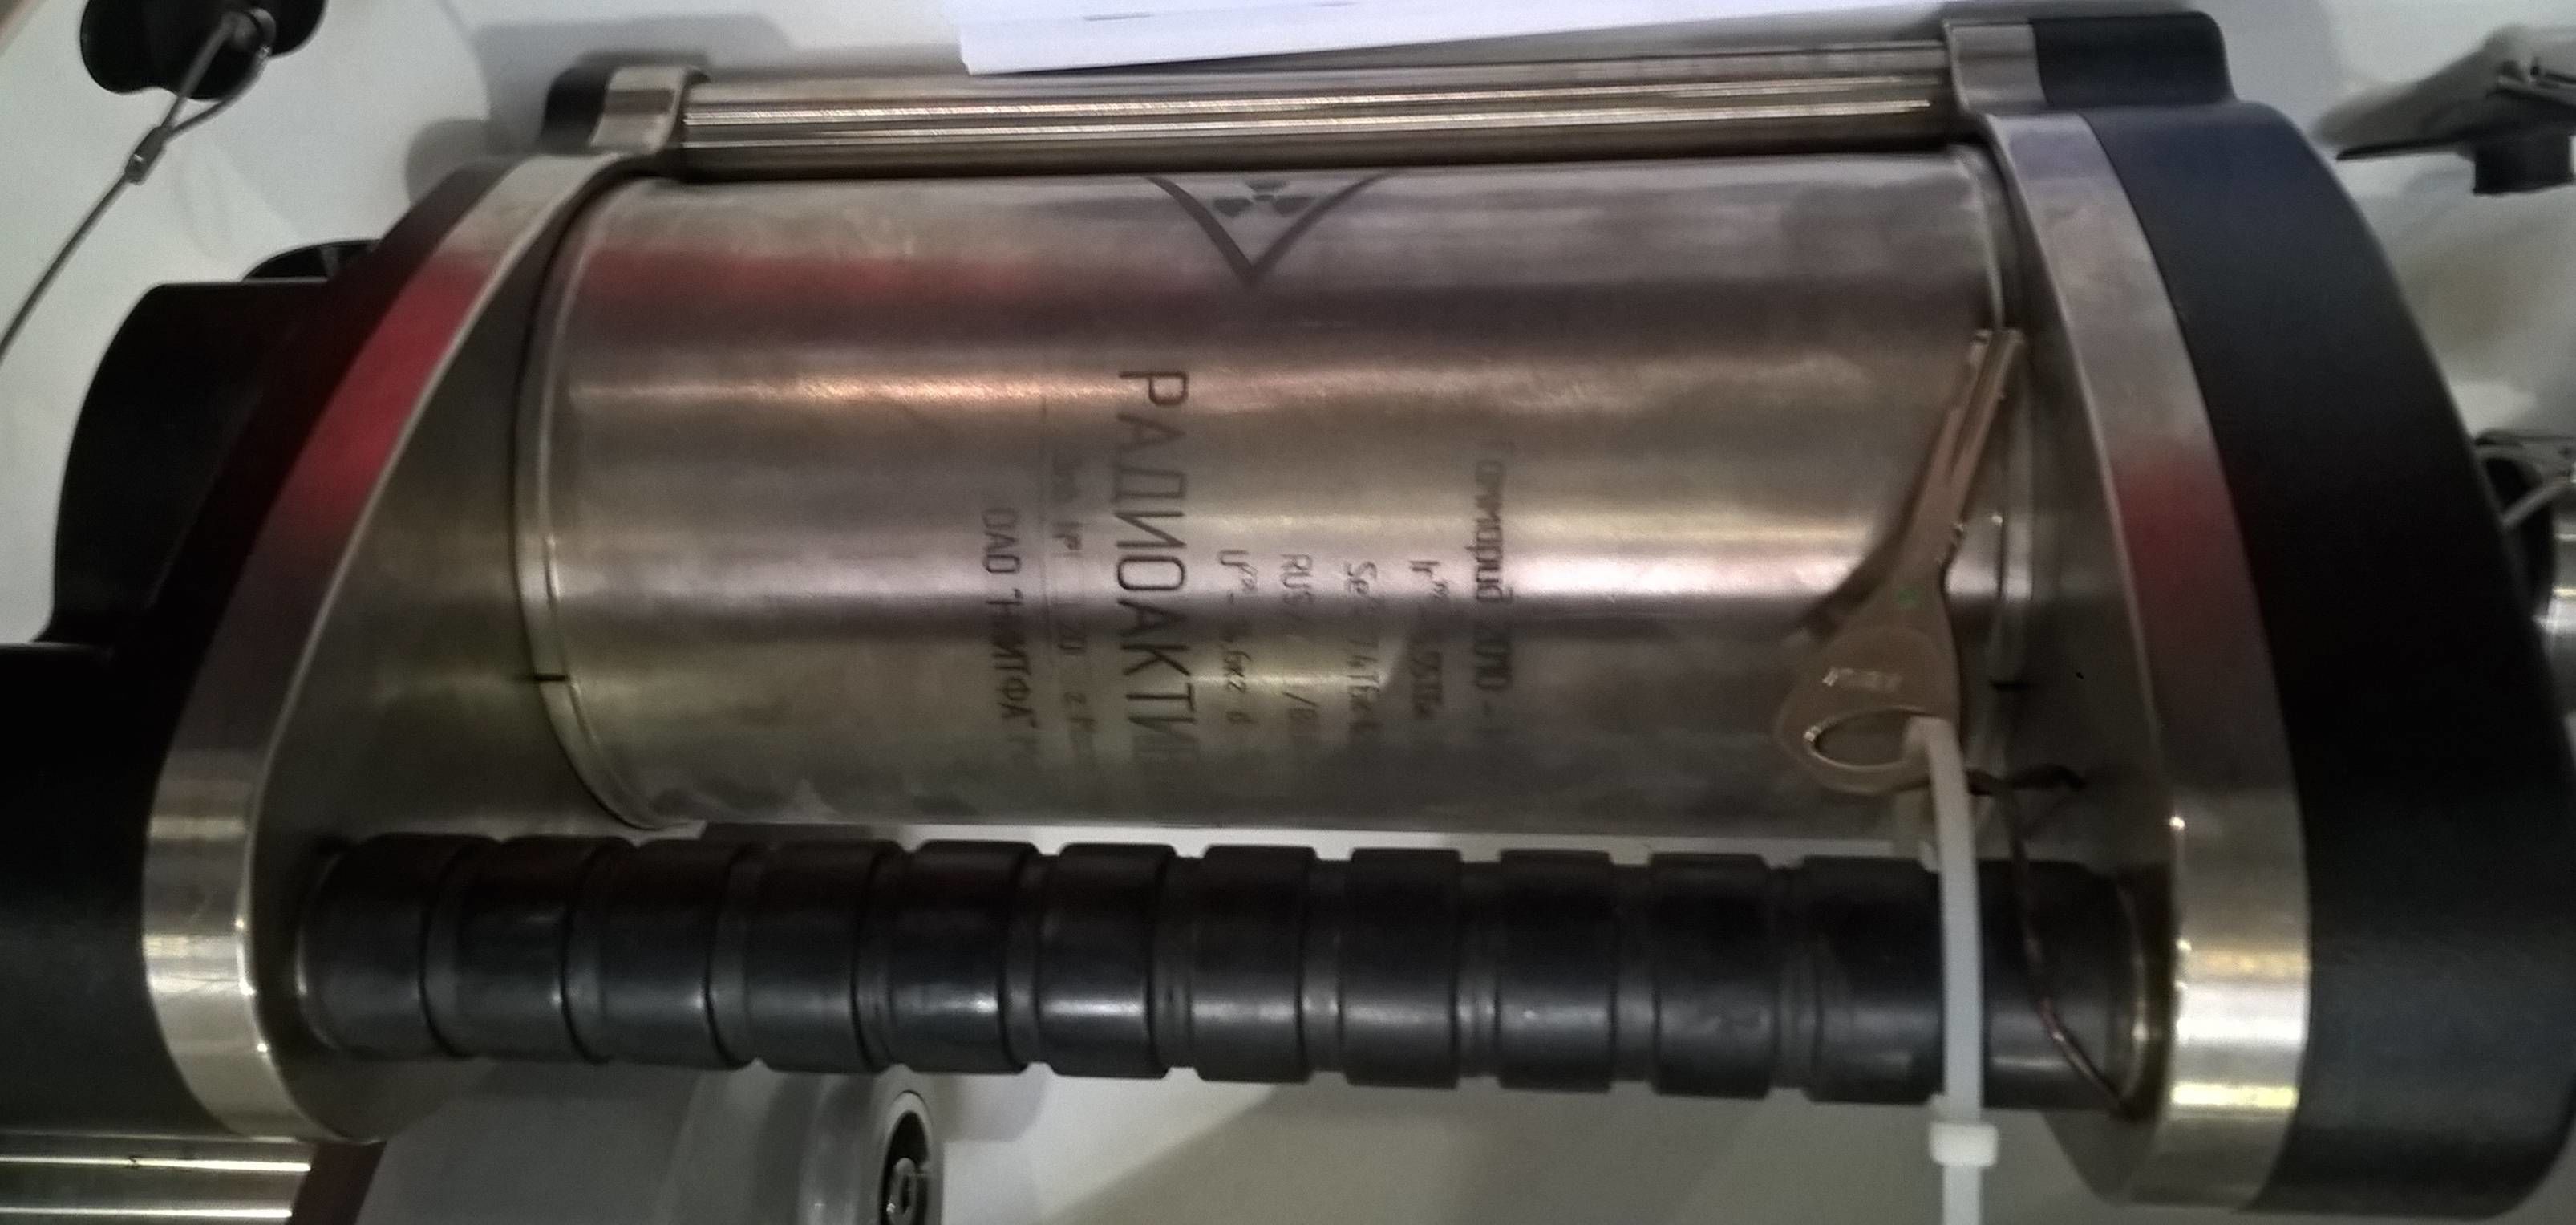 Гамма-дефектоскоп универсальный шлангового типа с универсальным коллиматором серии Гаммарид Р в НКПРОМ.РУ